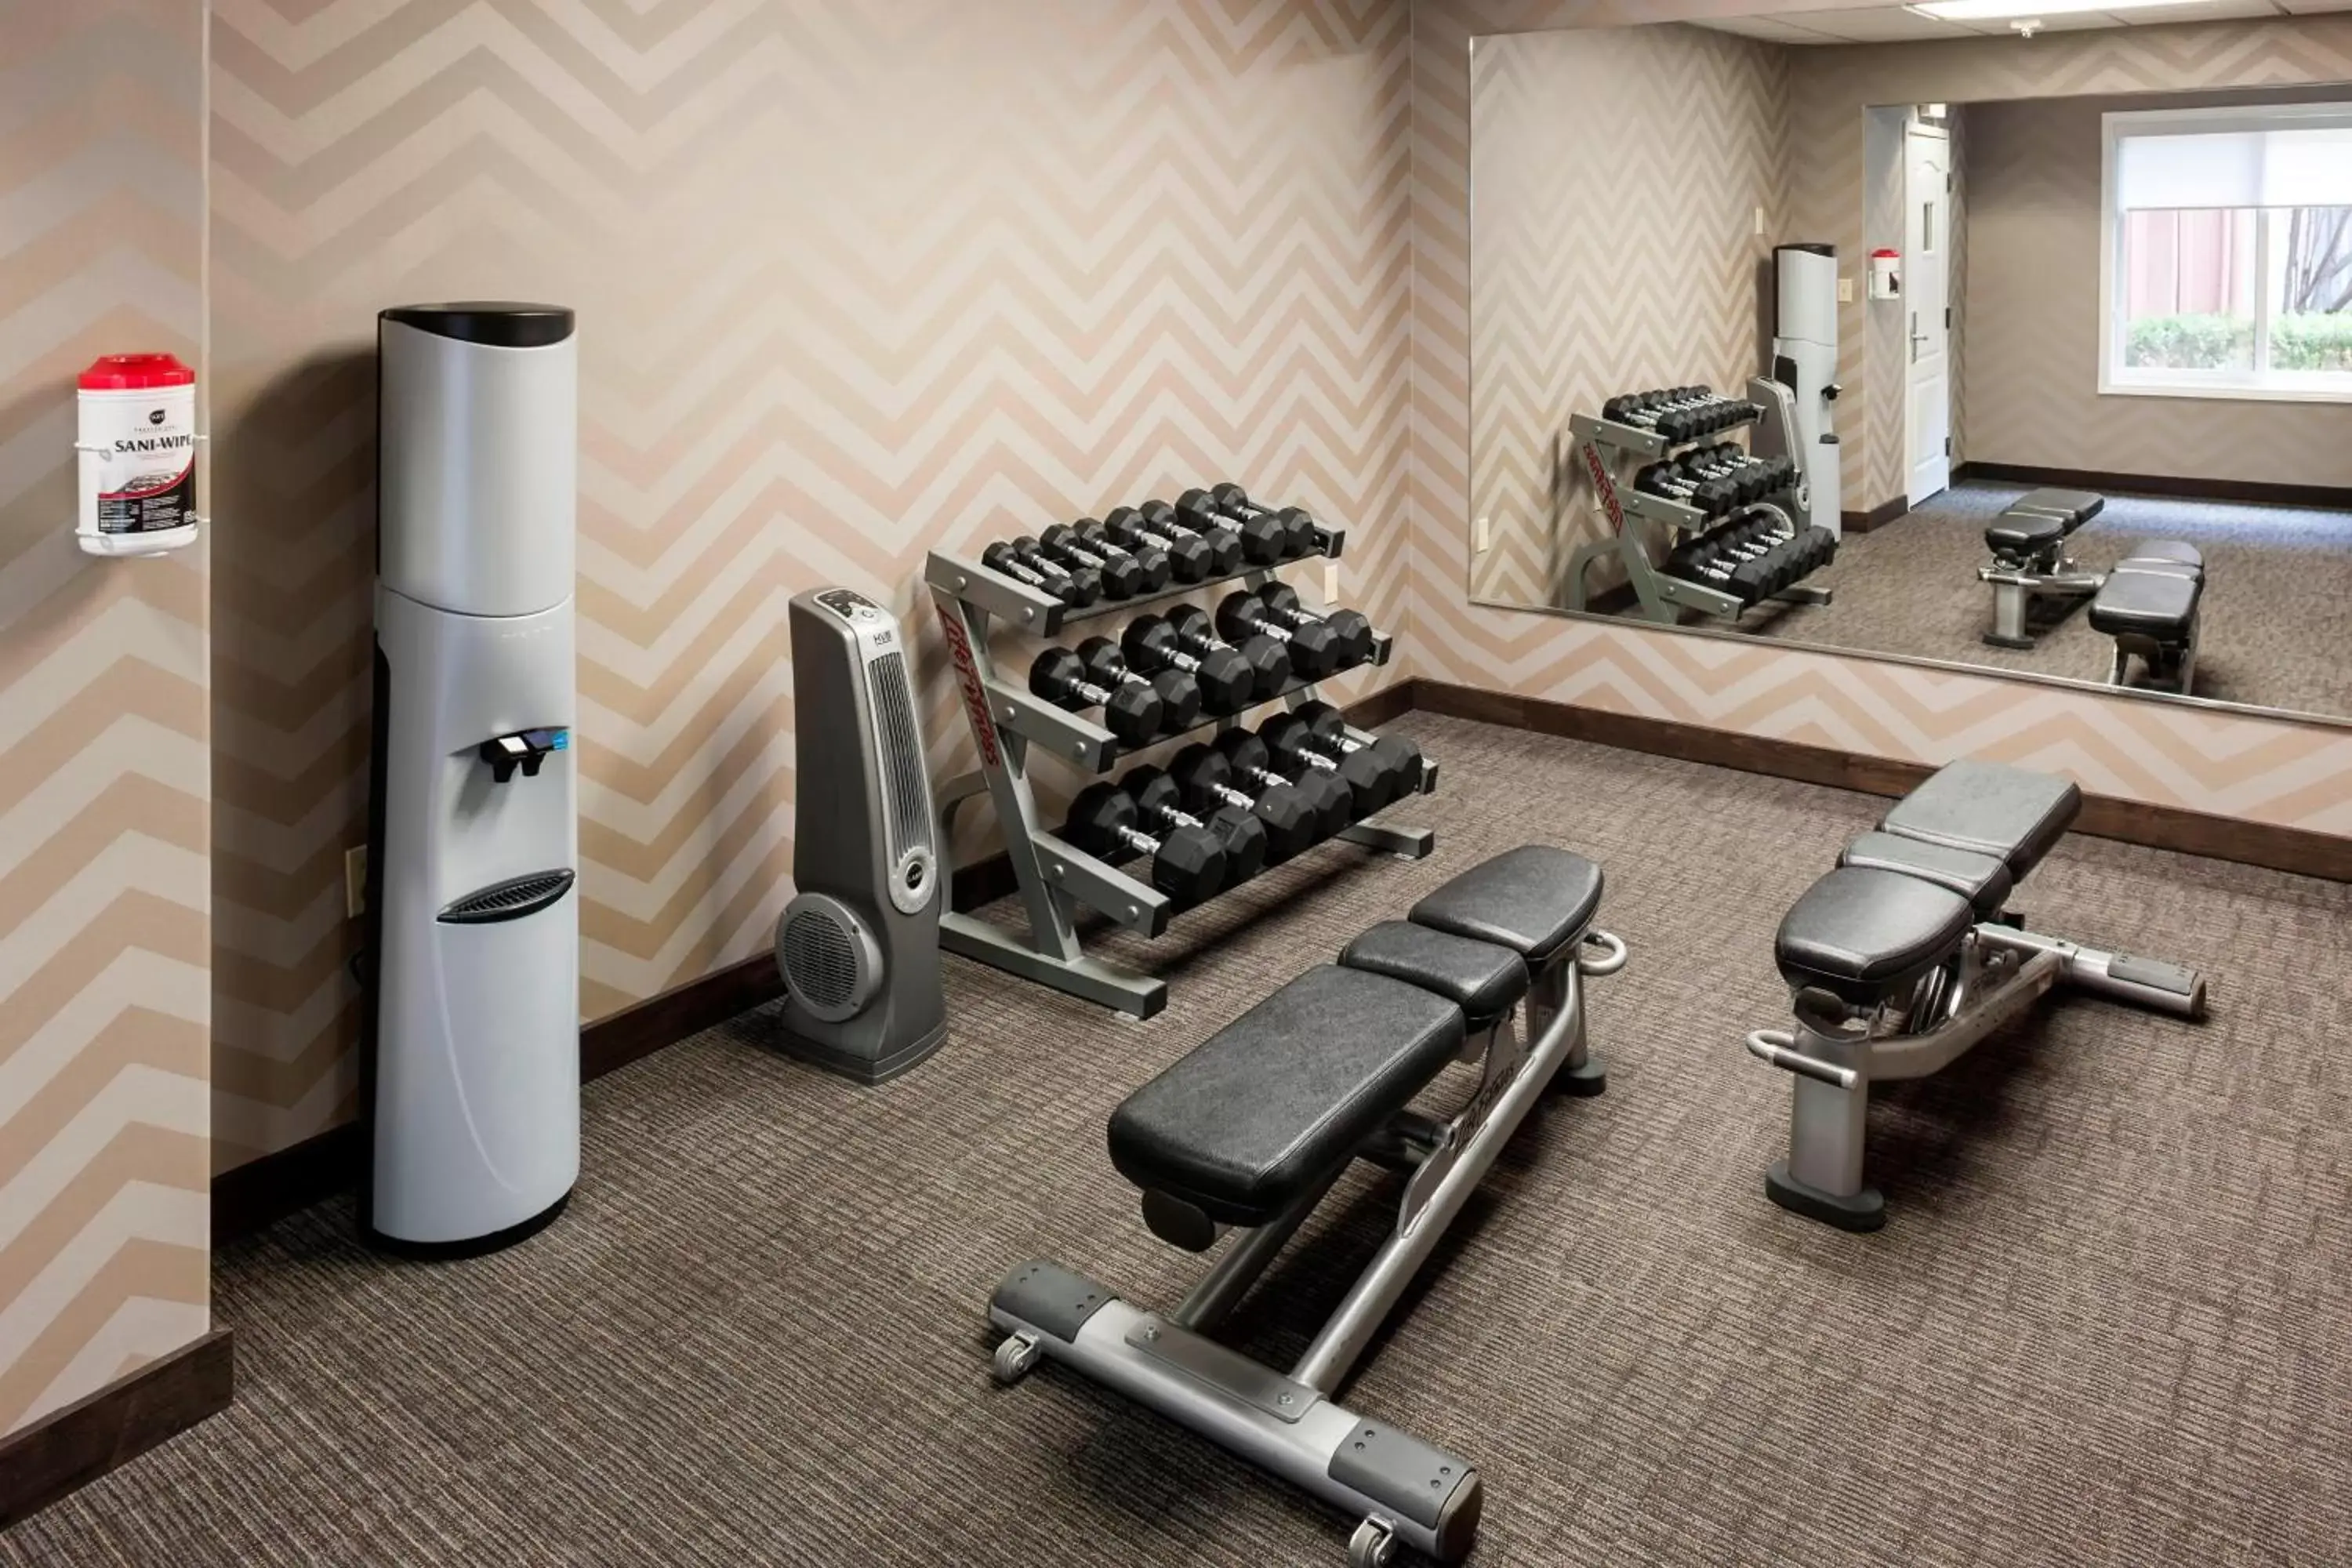 Fitness centre/facilities, Fitness Center/Facilities in Residence Inn by Marriott Santa Clarita Valencia